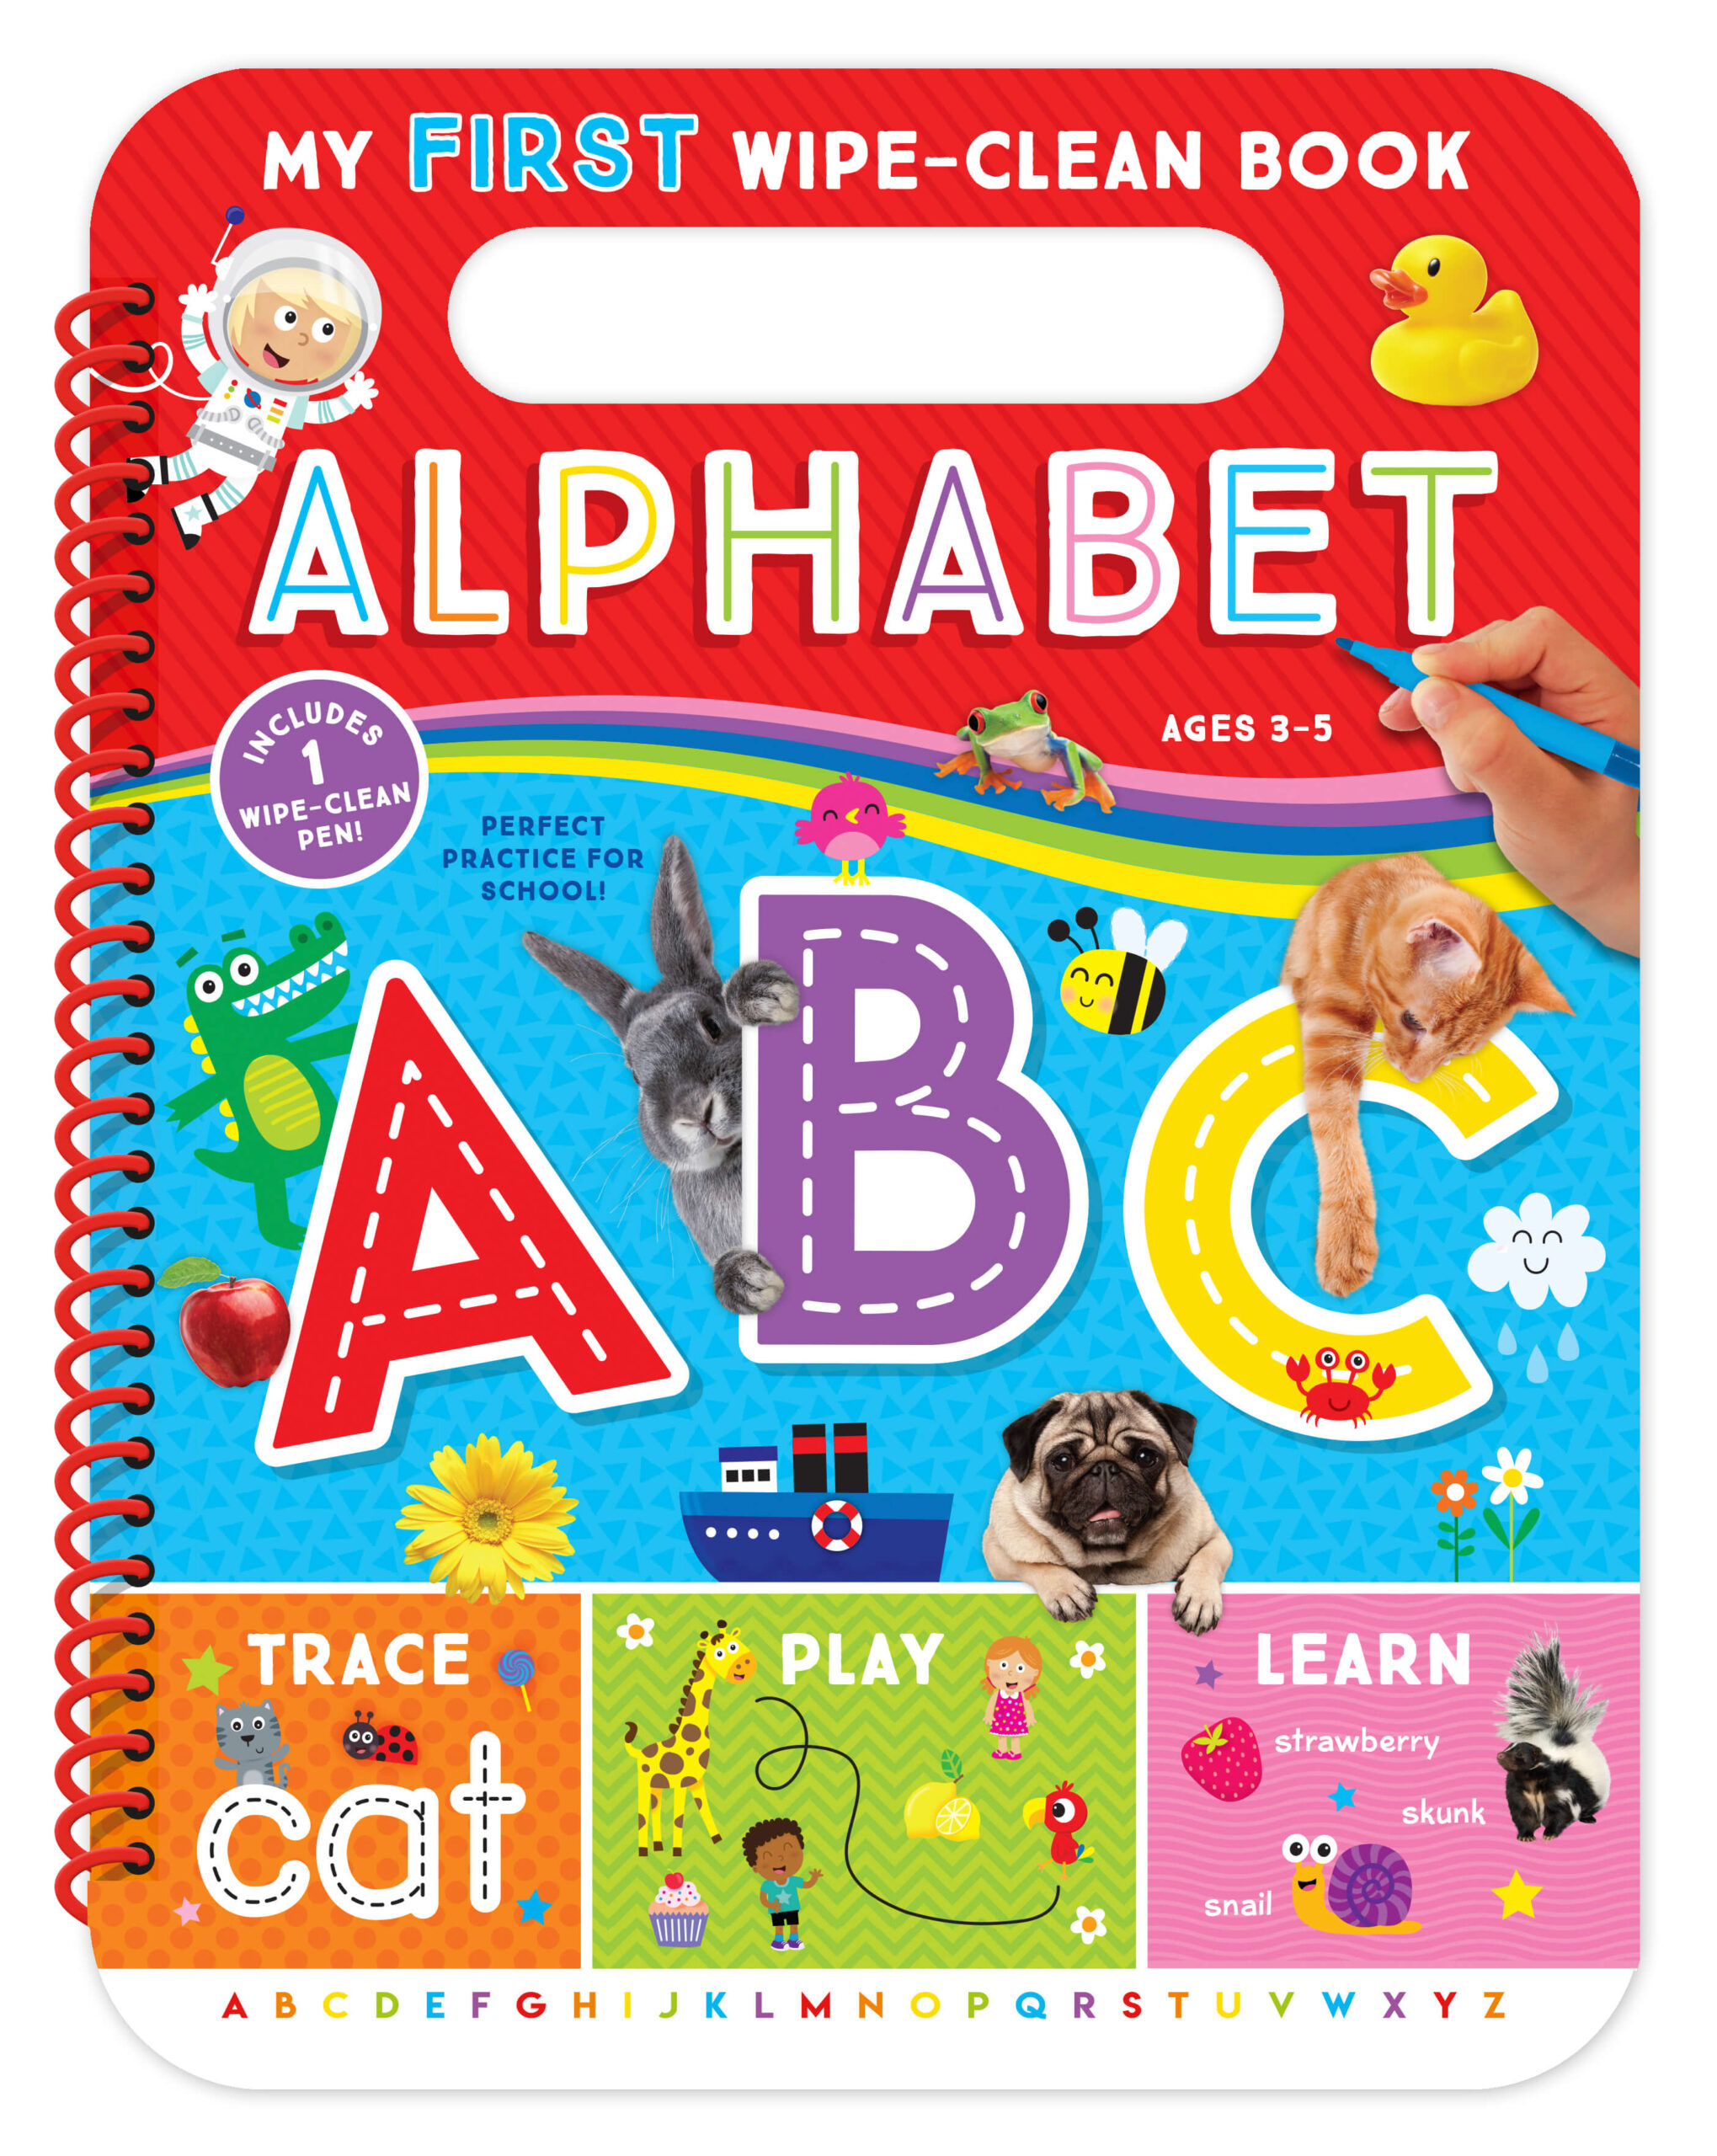 My First Wipe-Clean Book: Alphabet